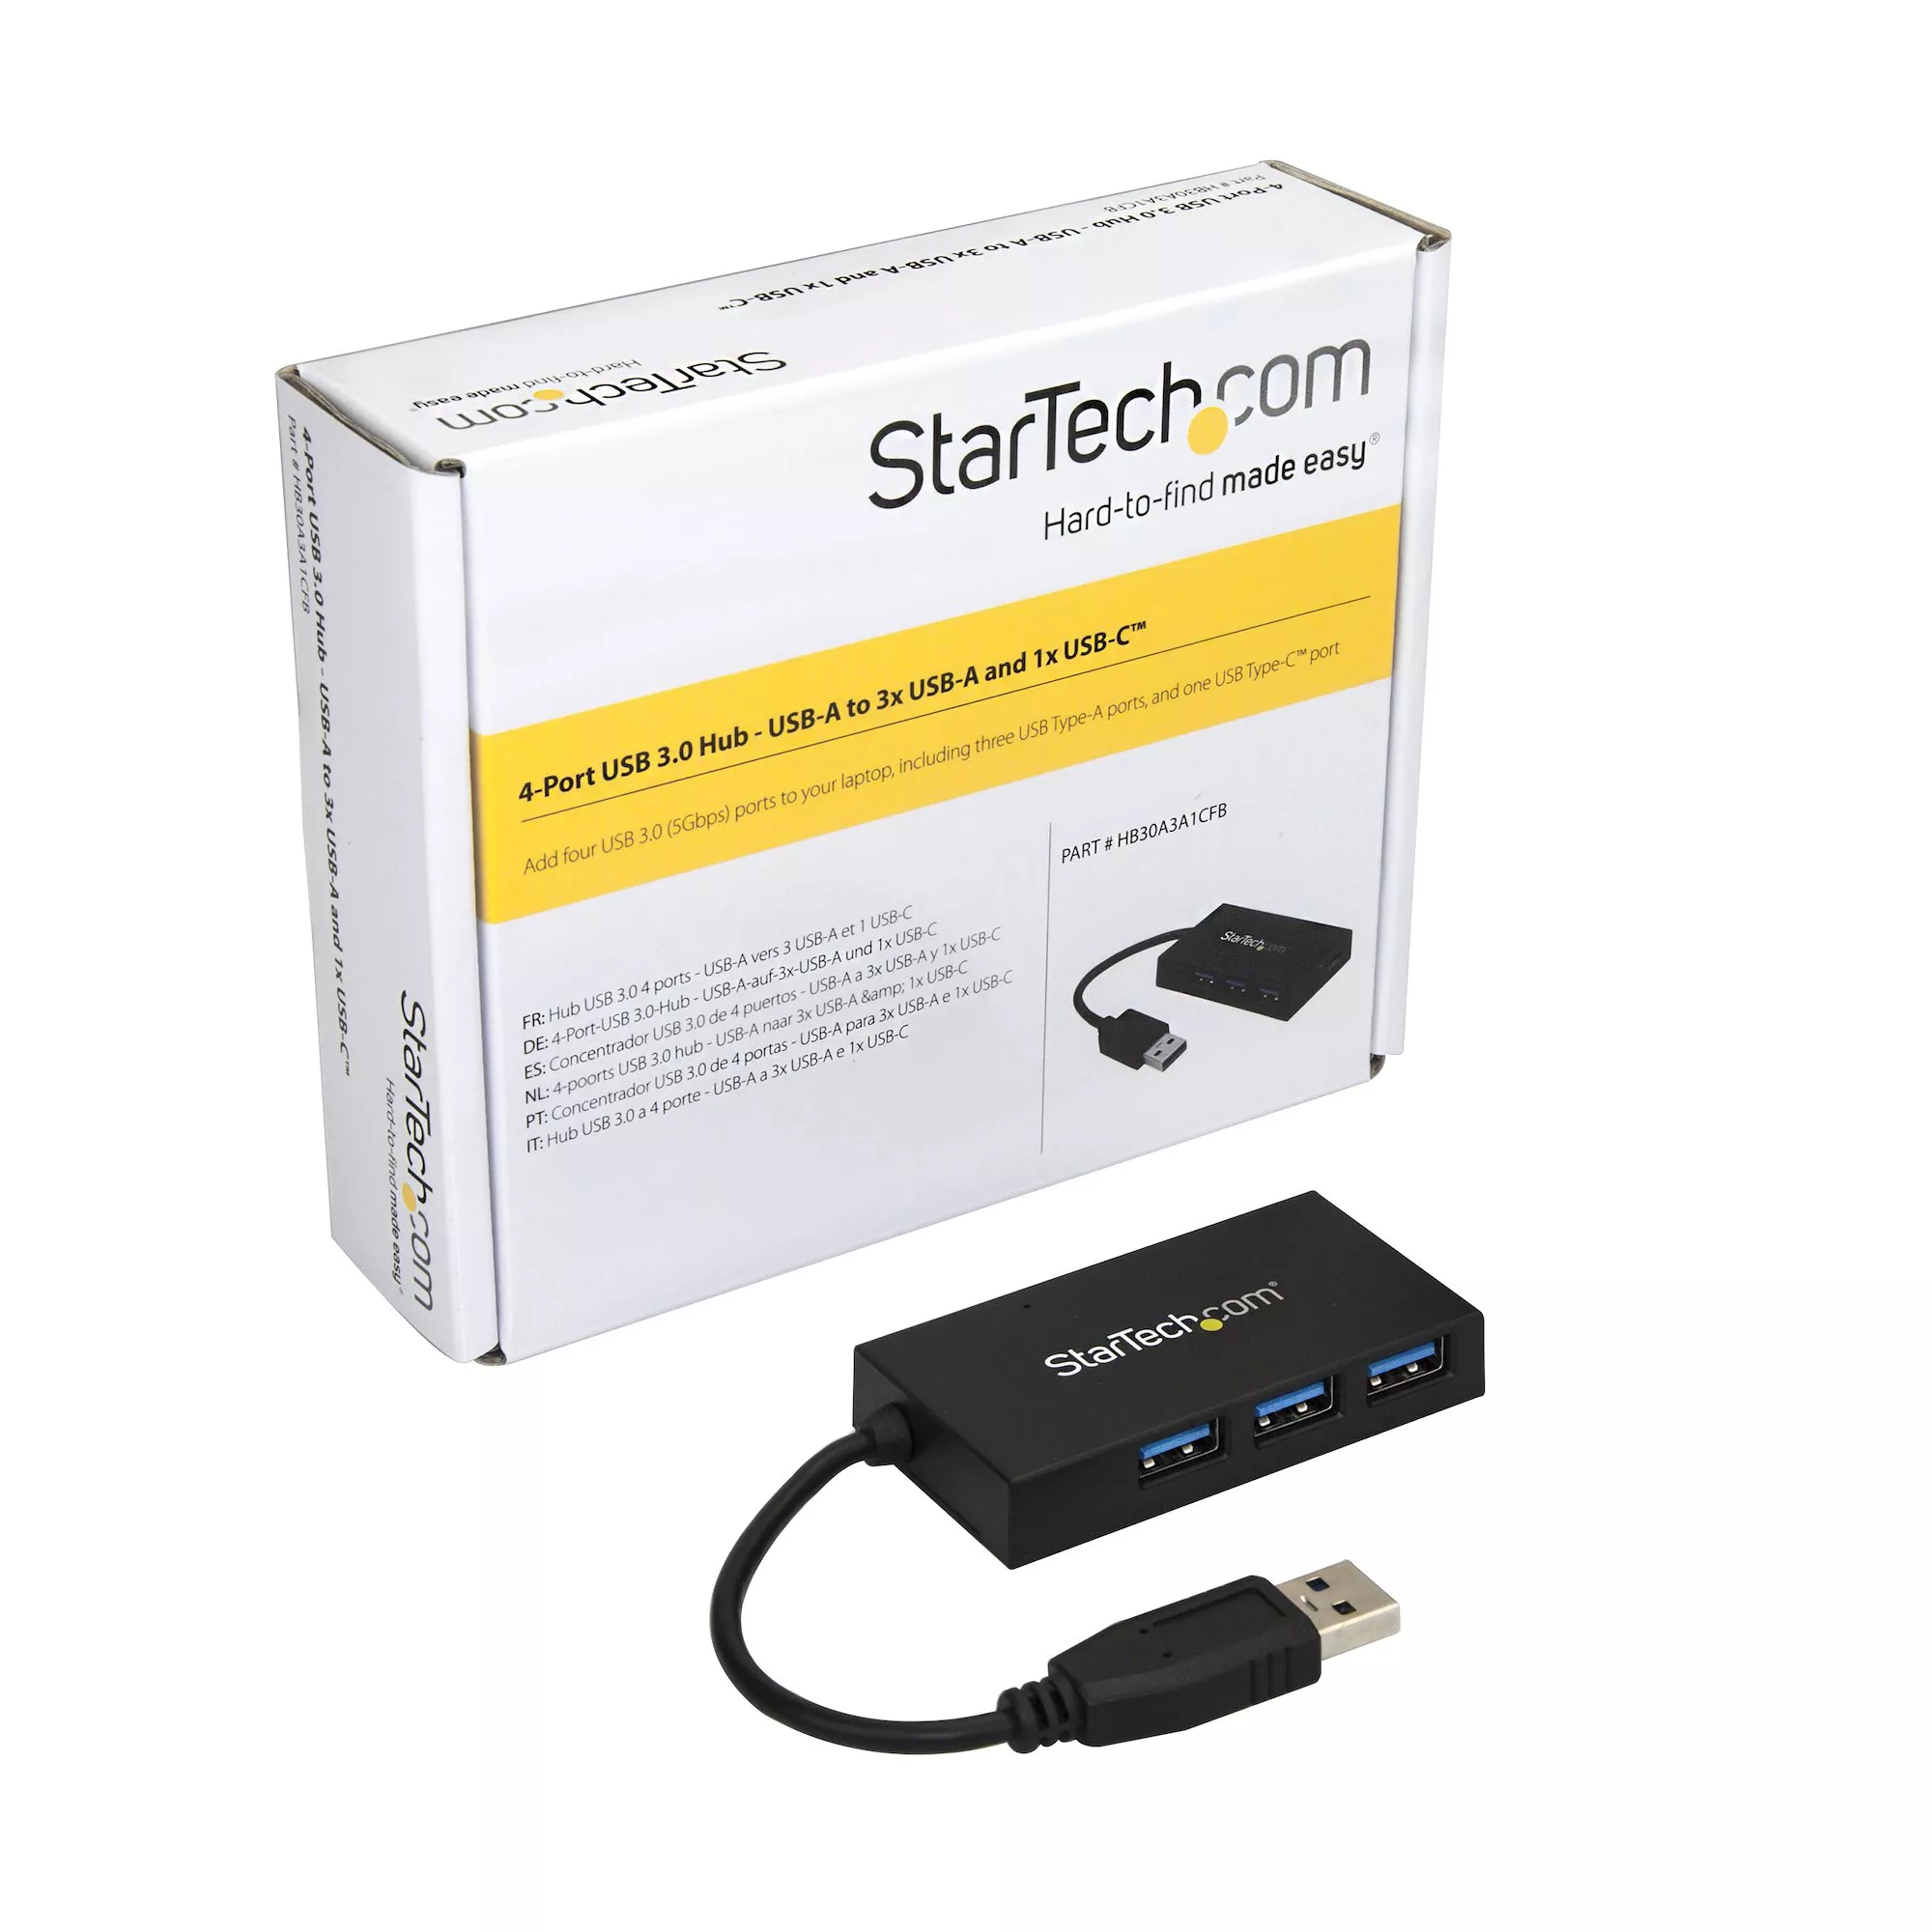 Vente StarTech.com Hub USB 3.0 4 Ports - Hub StarTech.com au meilleur prix - visuel 6